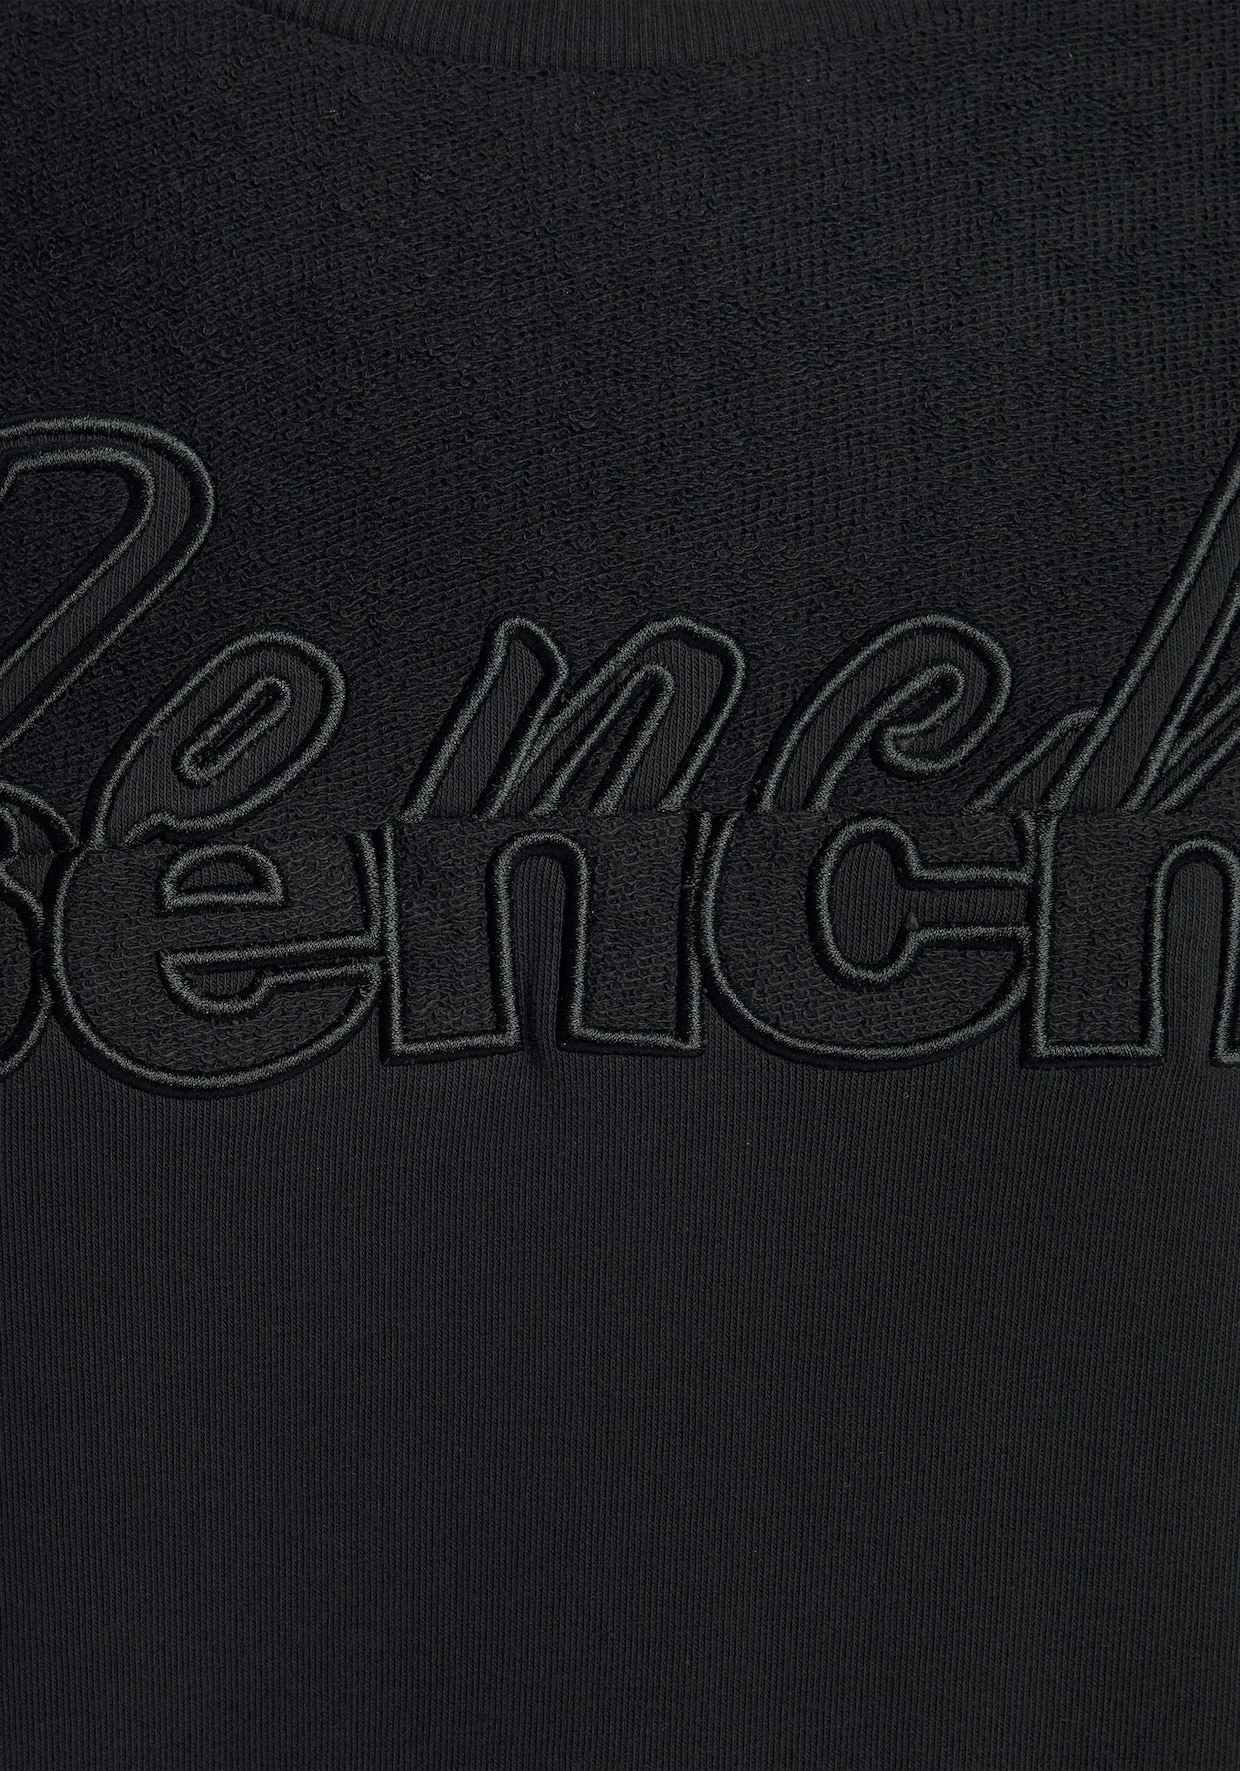 Bench. Sweatshirt - schwarz